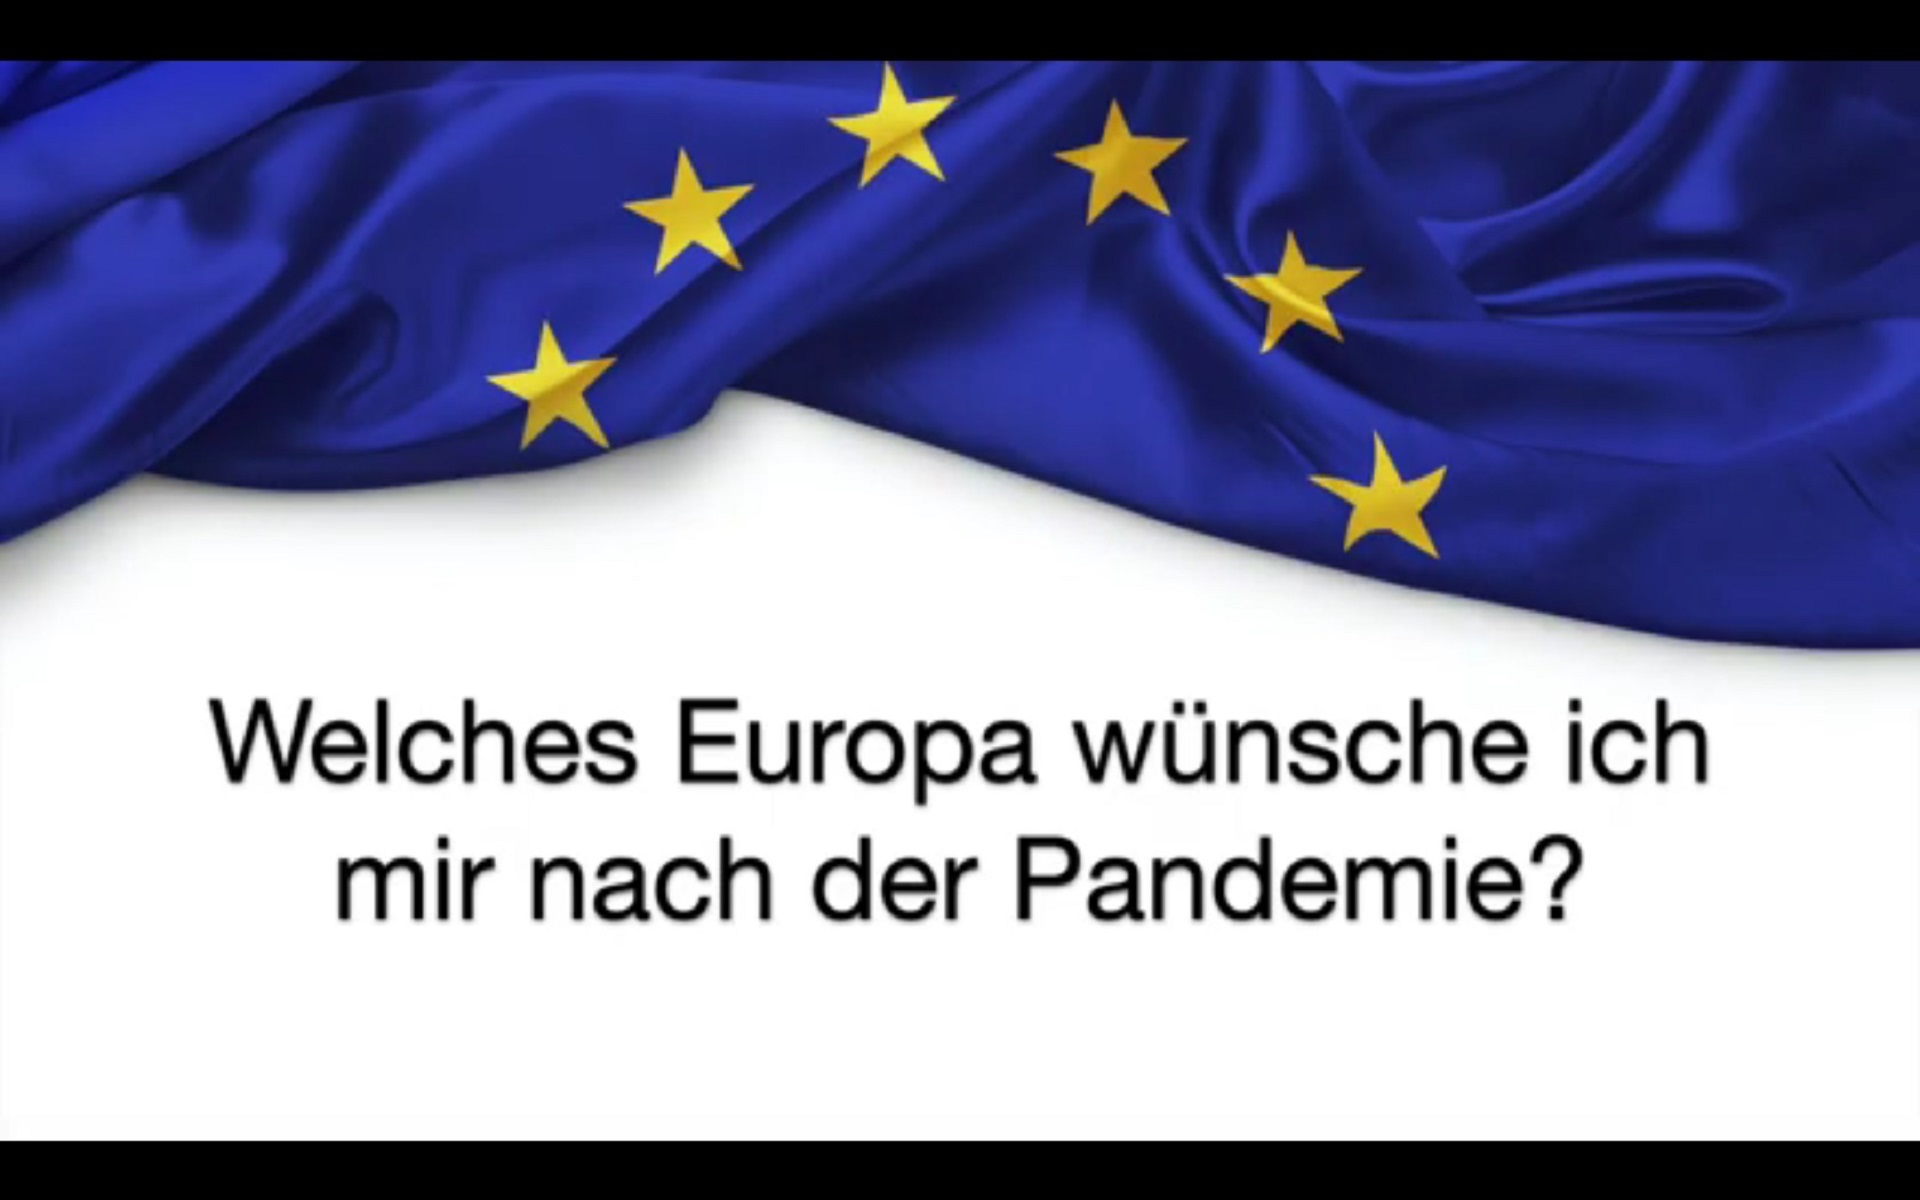 Video zur Europawoche: Welches Europa wünsche ich mir nach der Pandemie?